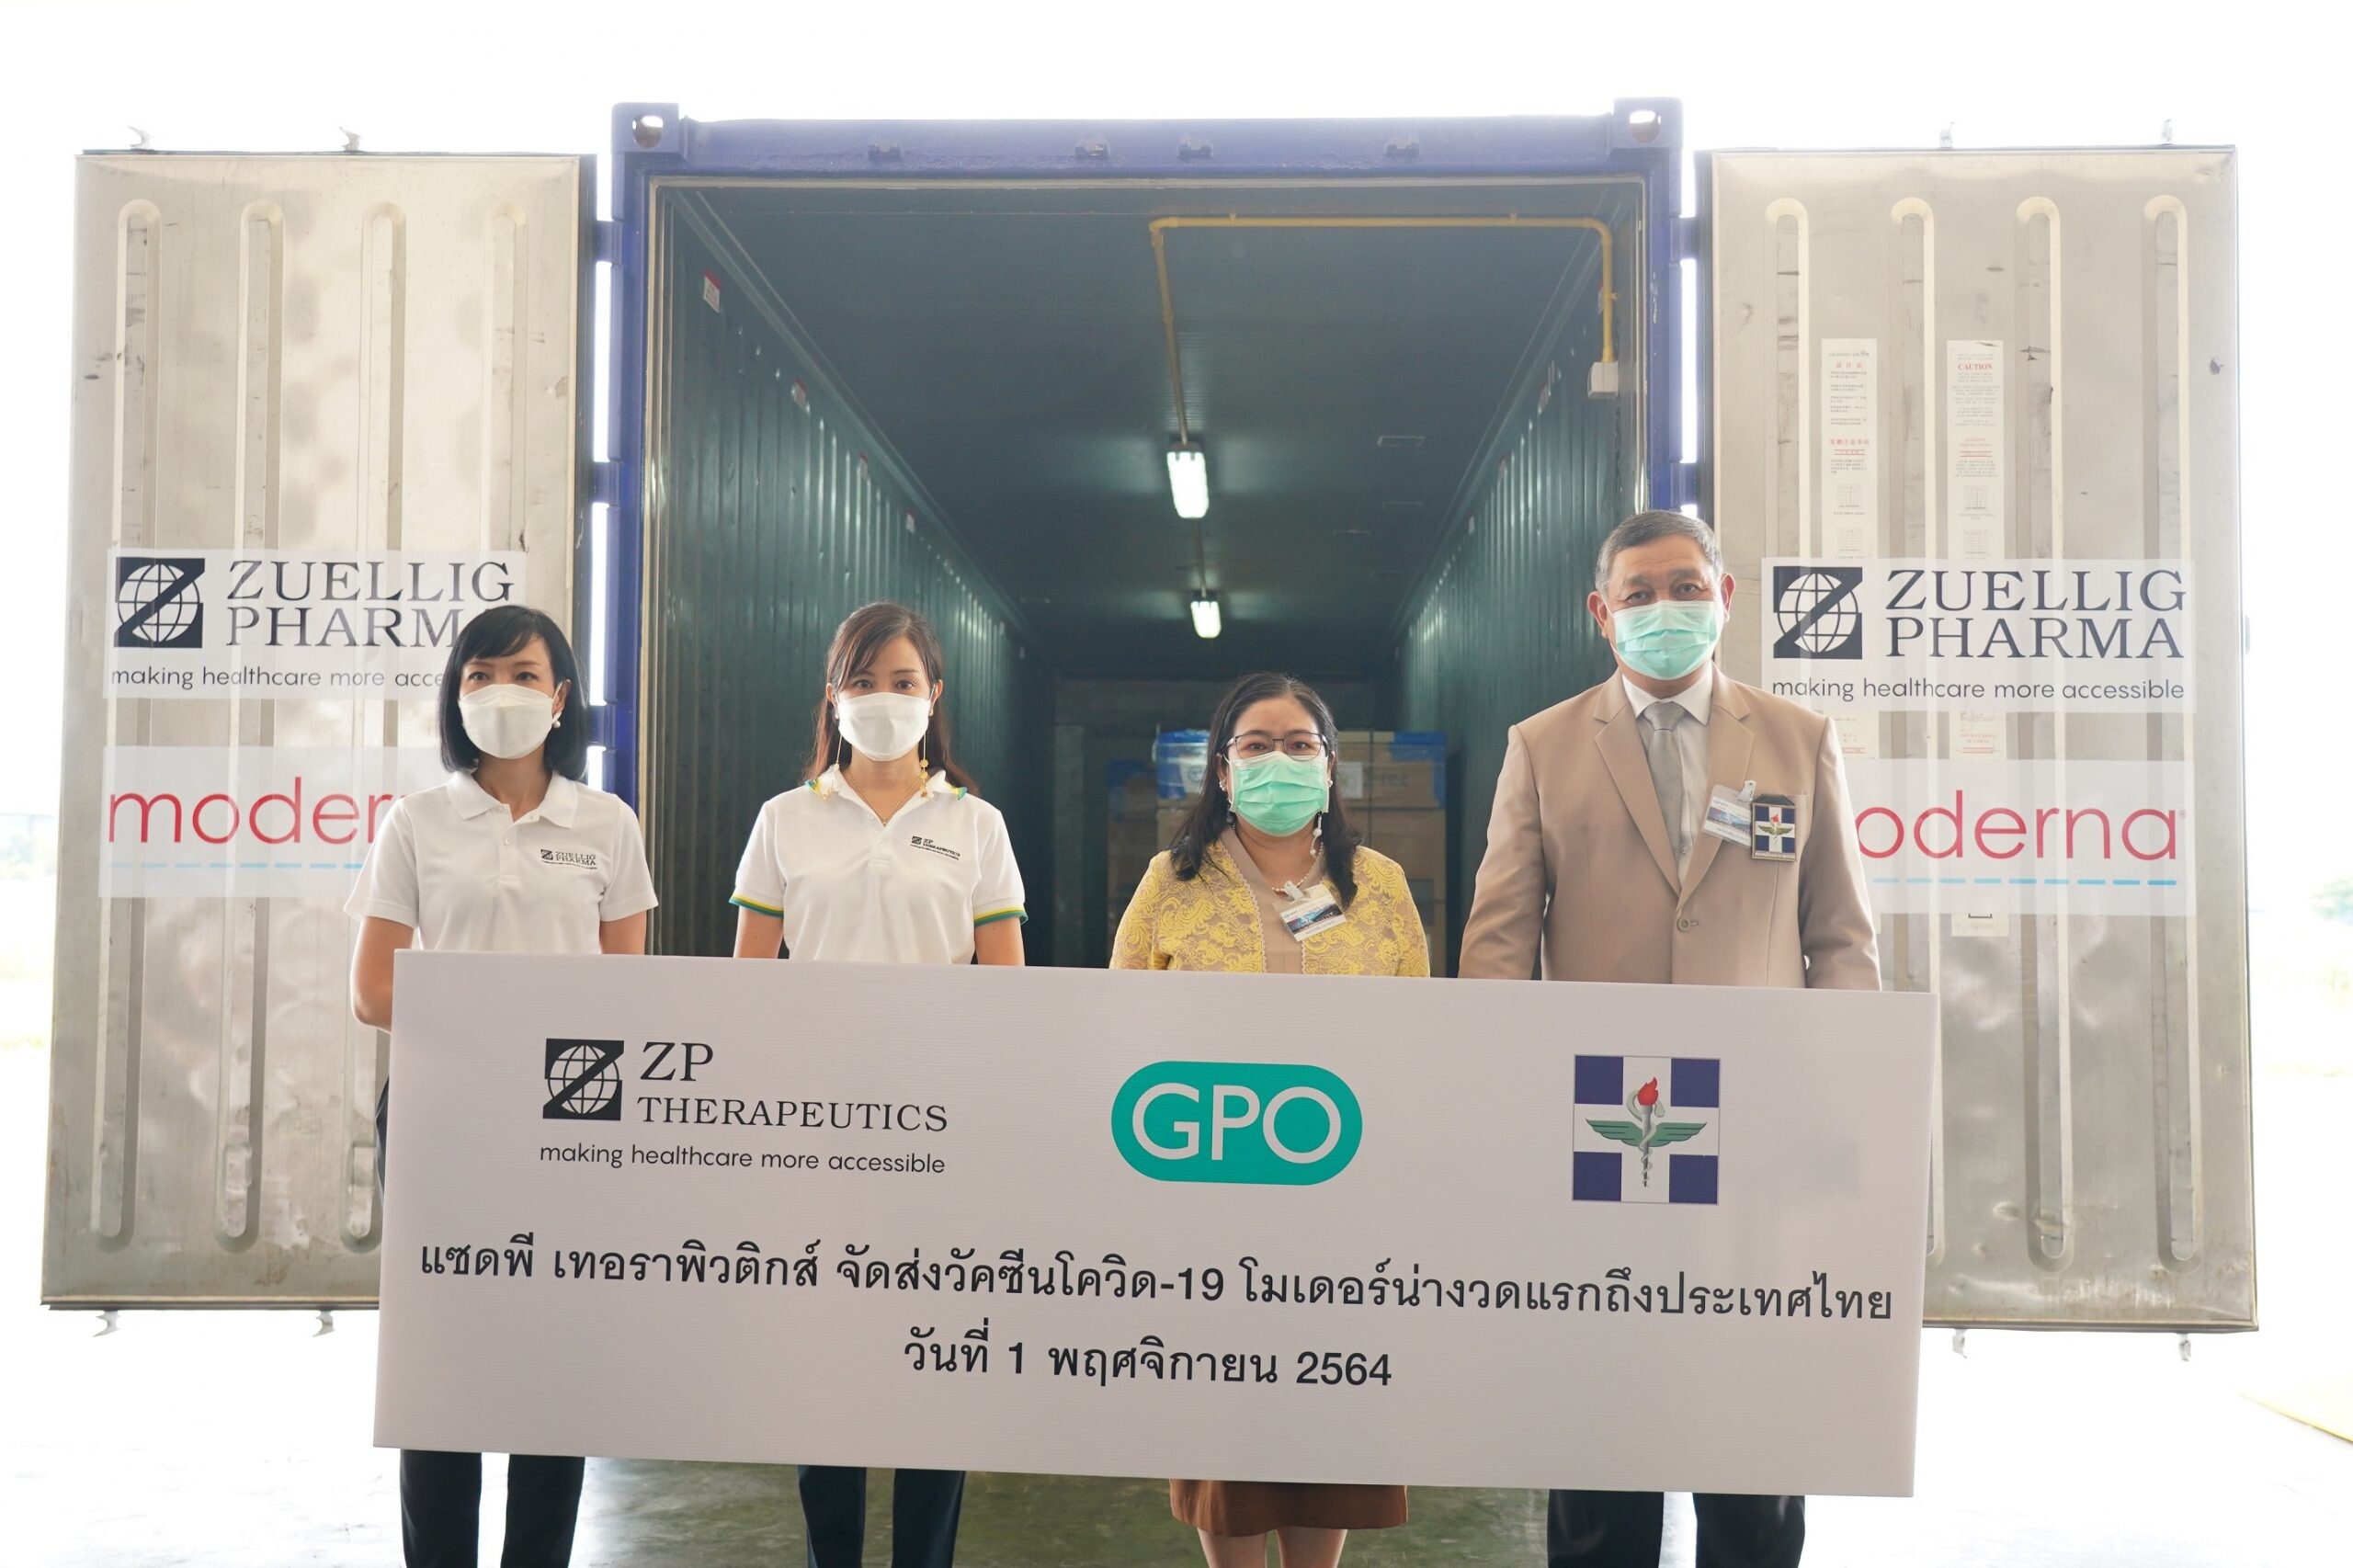 แซดพี เทอราพิวติกส์ พร้อมส่งมอบวัคซีนโควิด-19 โมเดอร์น่า งวดแรก เพื่อเพิ่มการเข้าถึงวัคซีนในประเทศไทย